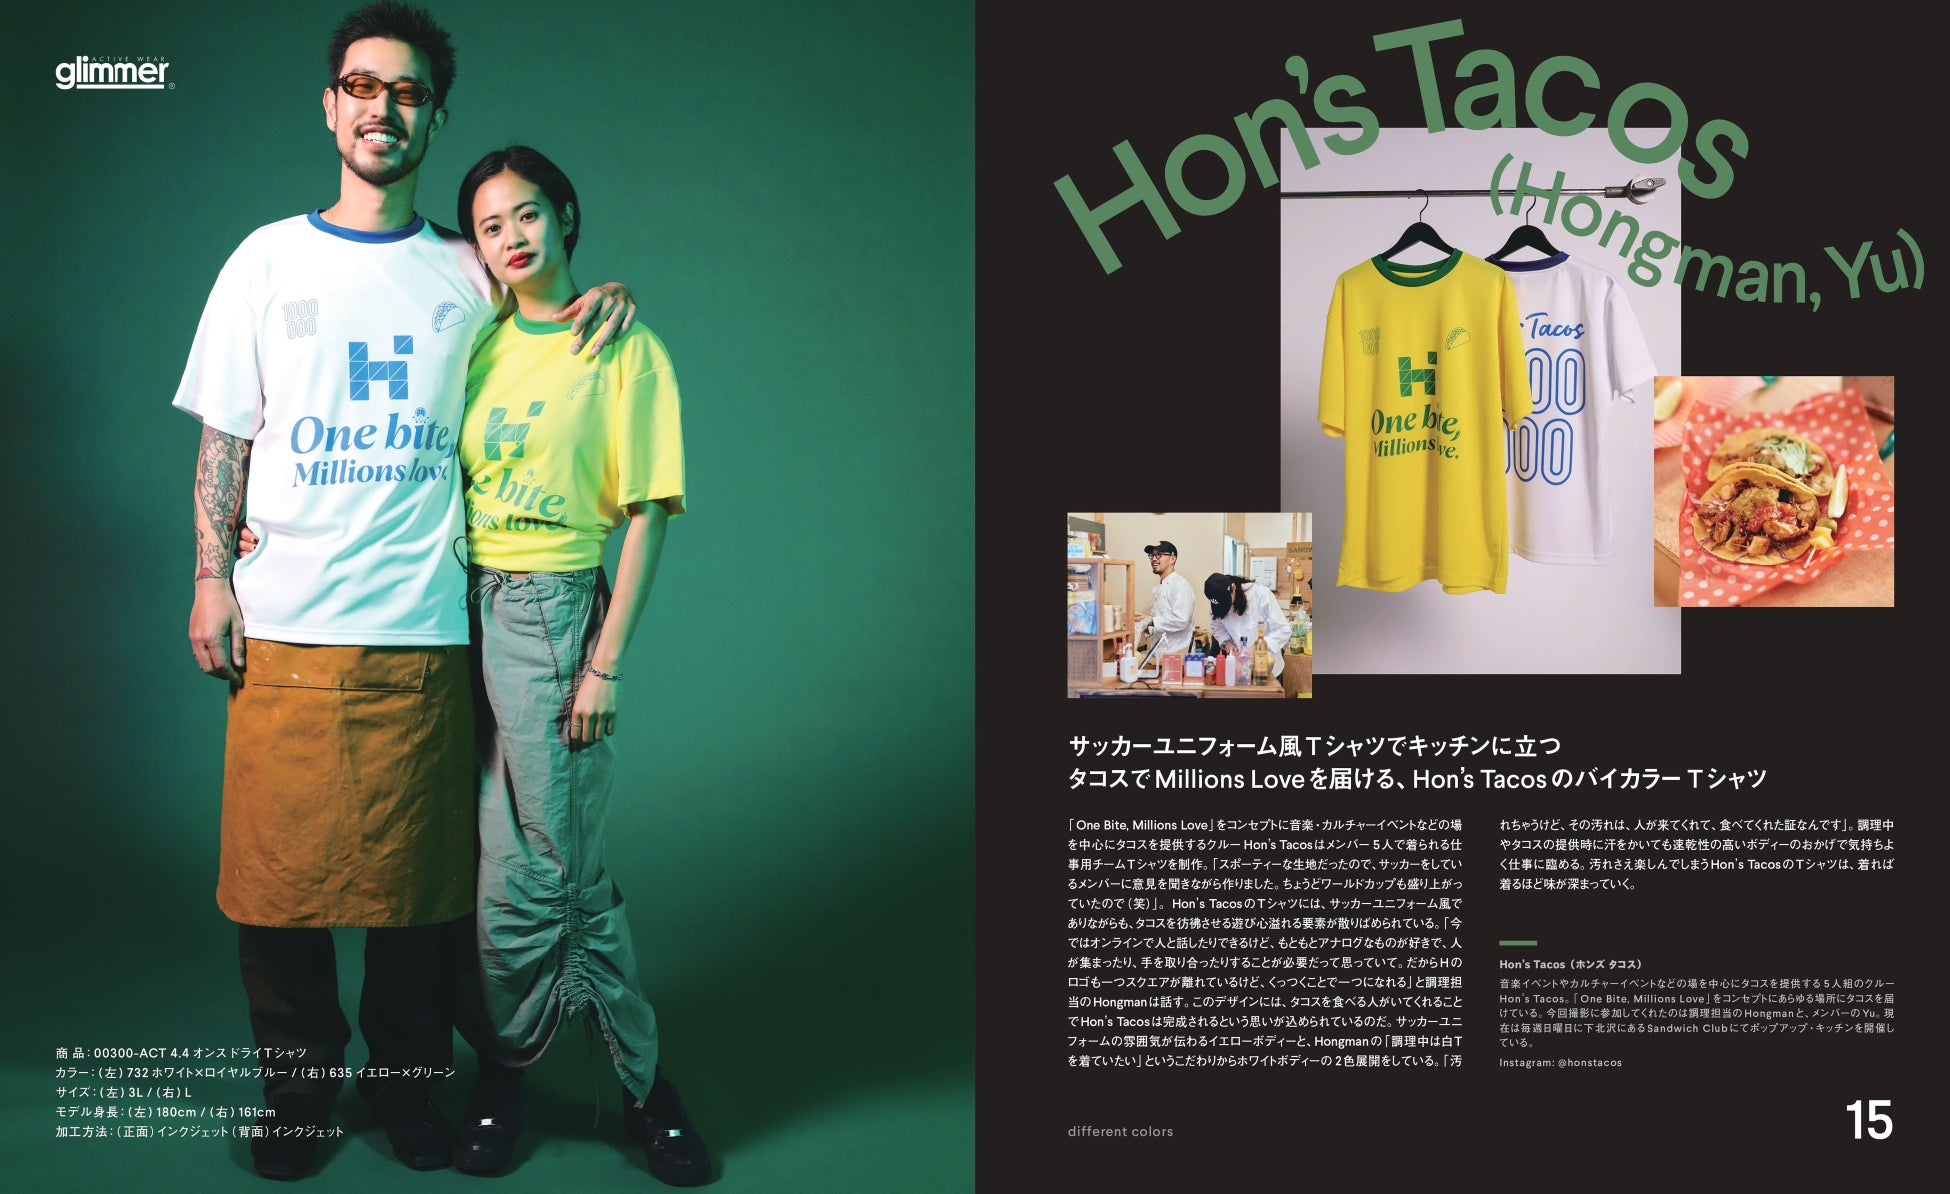 プリンタブルウェア「Printstar」「glimmer」と人気メディア『NEUT Magazine』がコラボで最新カタログを発刊。俳優松㟢翔平ら7組が自作Tシャツを披露。プレゼントキャンペーンも実施のサブ画像9